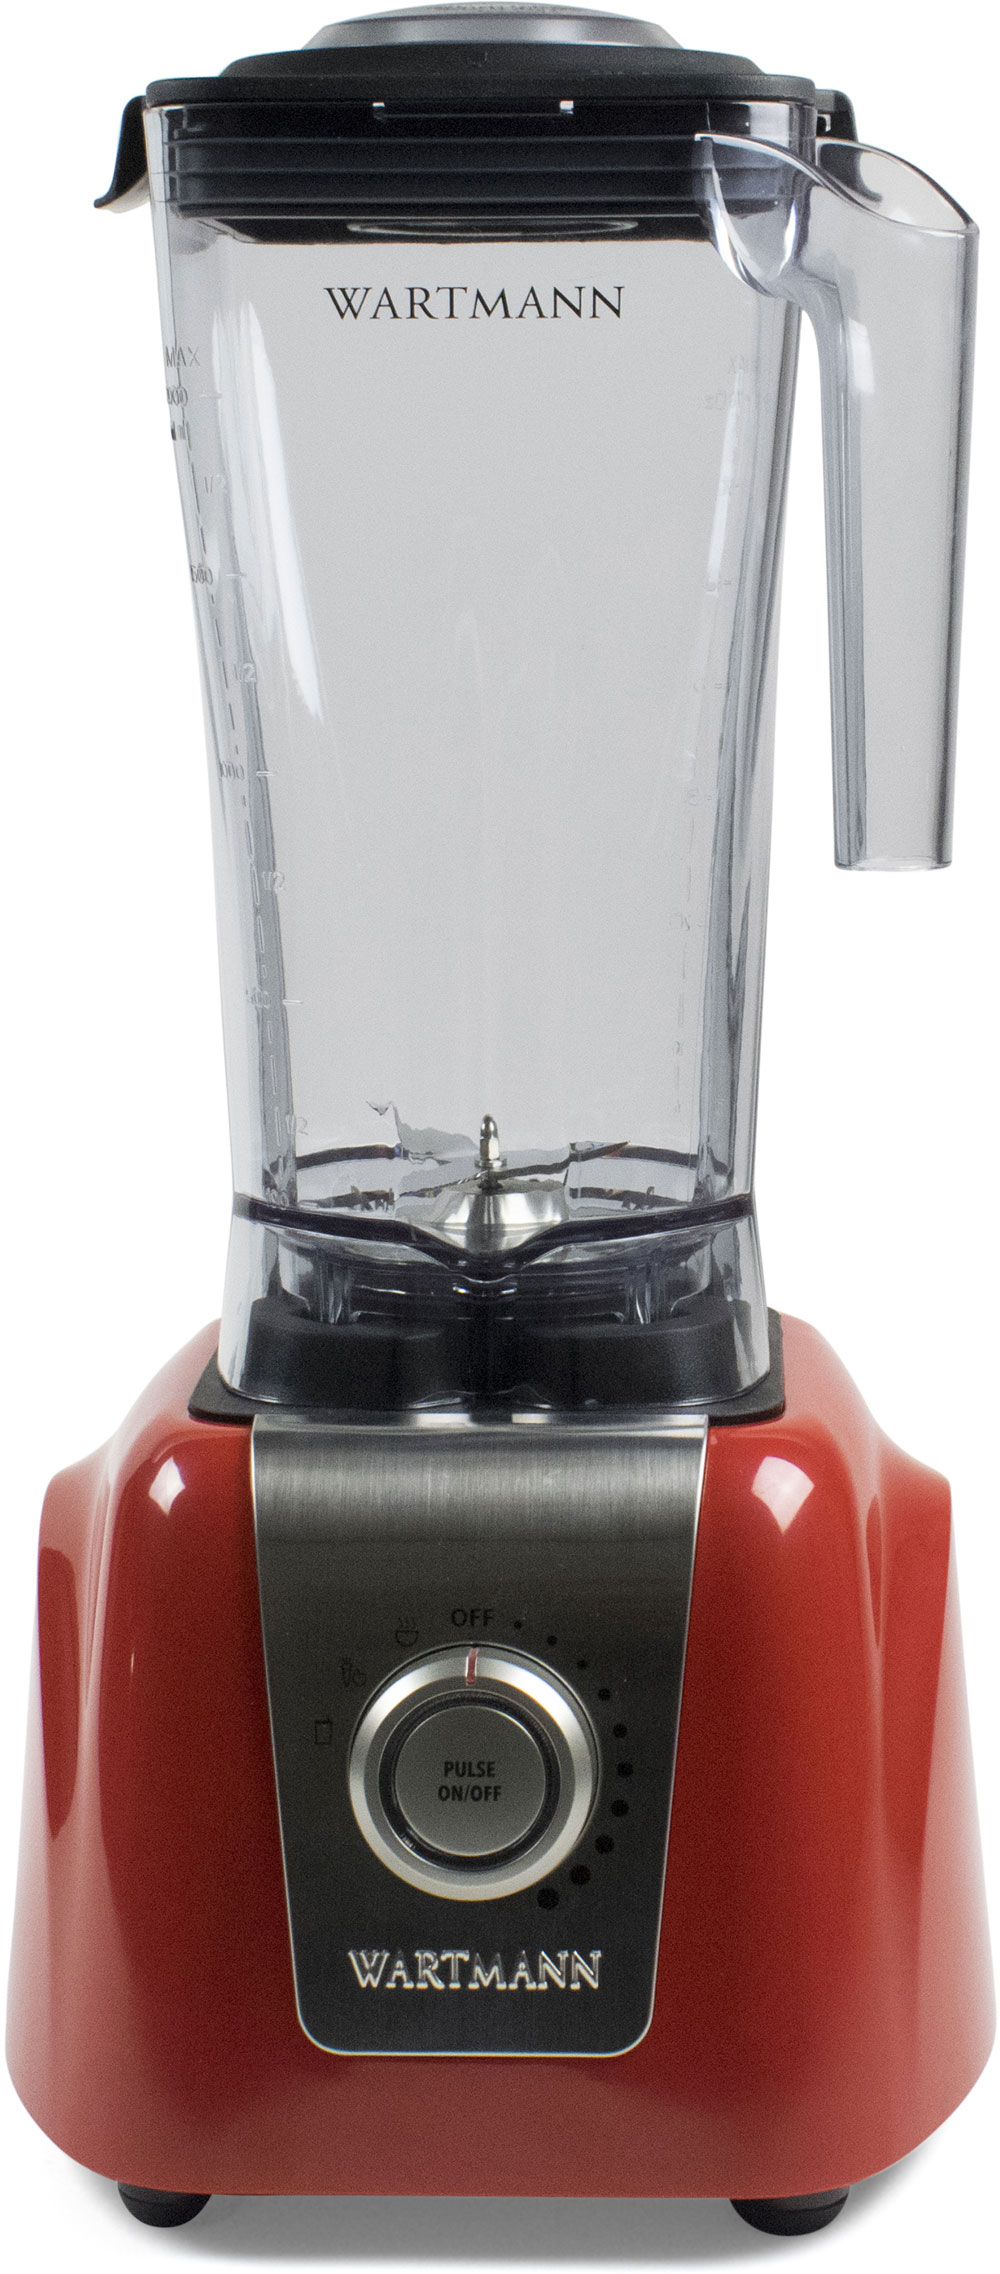 Wartmann High Speed Blender WM-1807 HS (2 liter Tritan can) (Red)